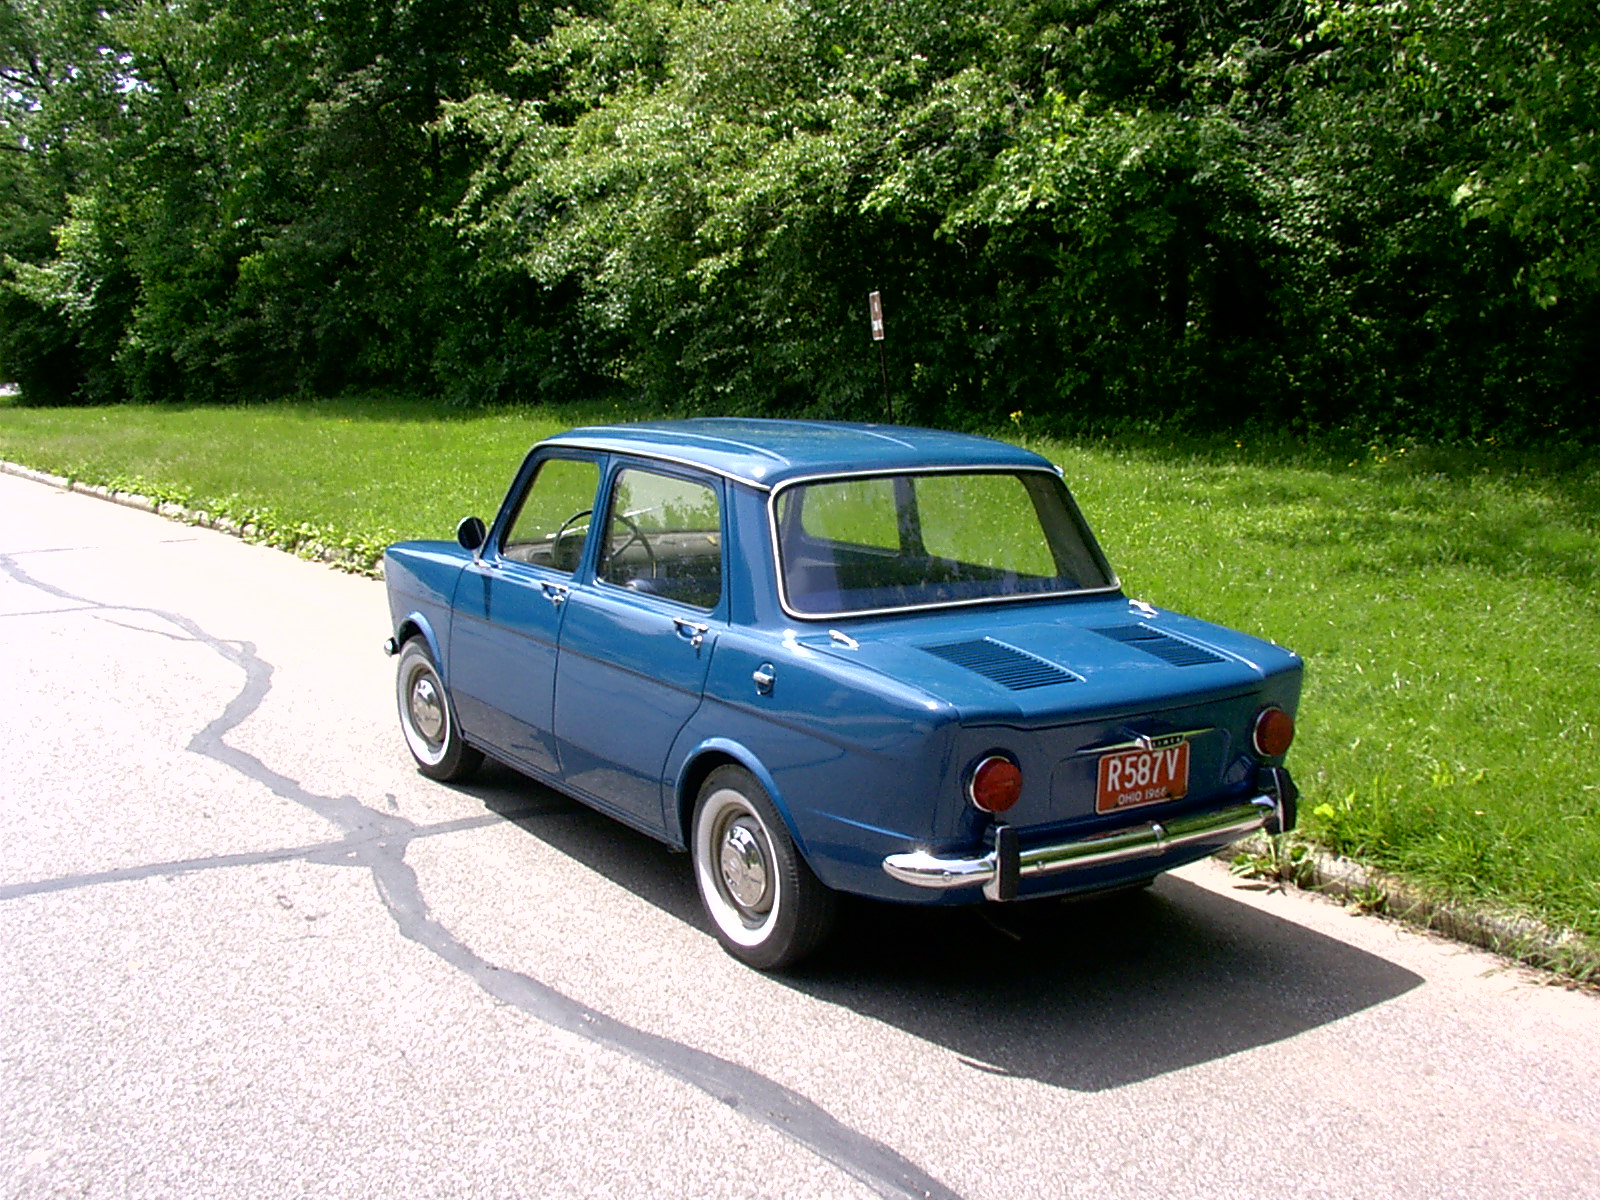 A 1966 Simca 1000 